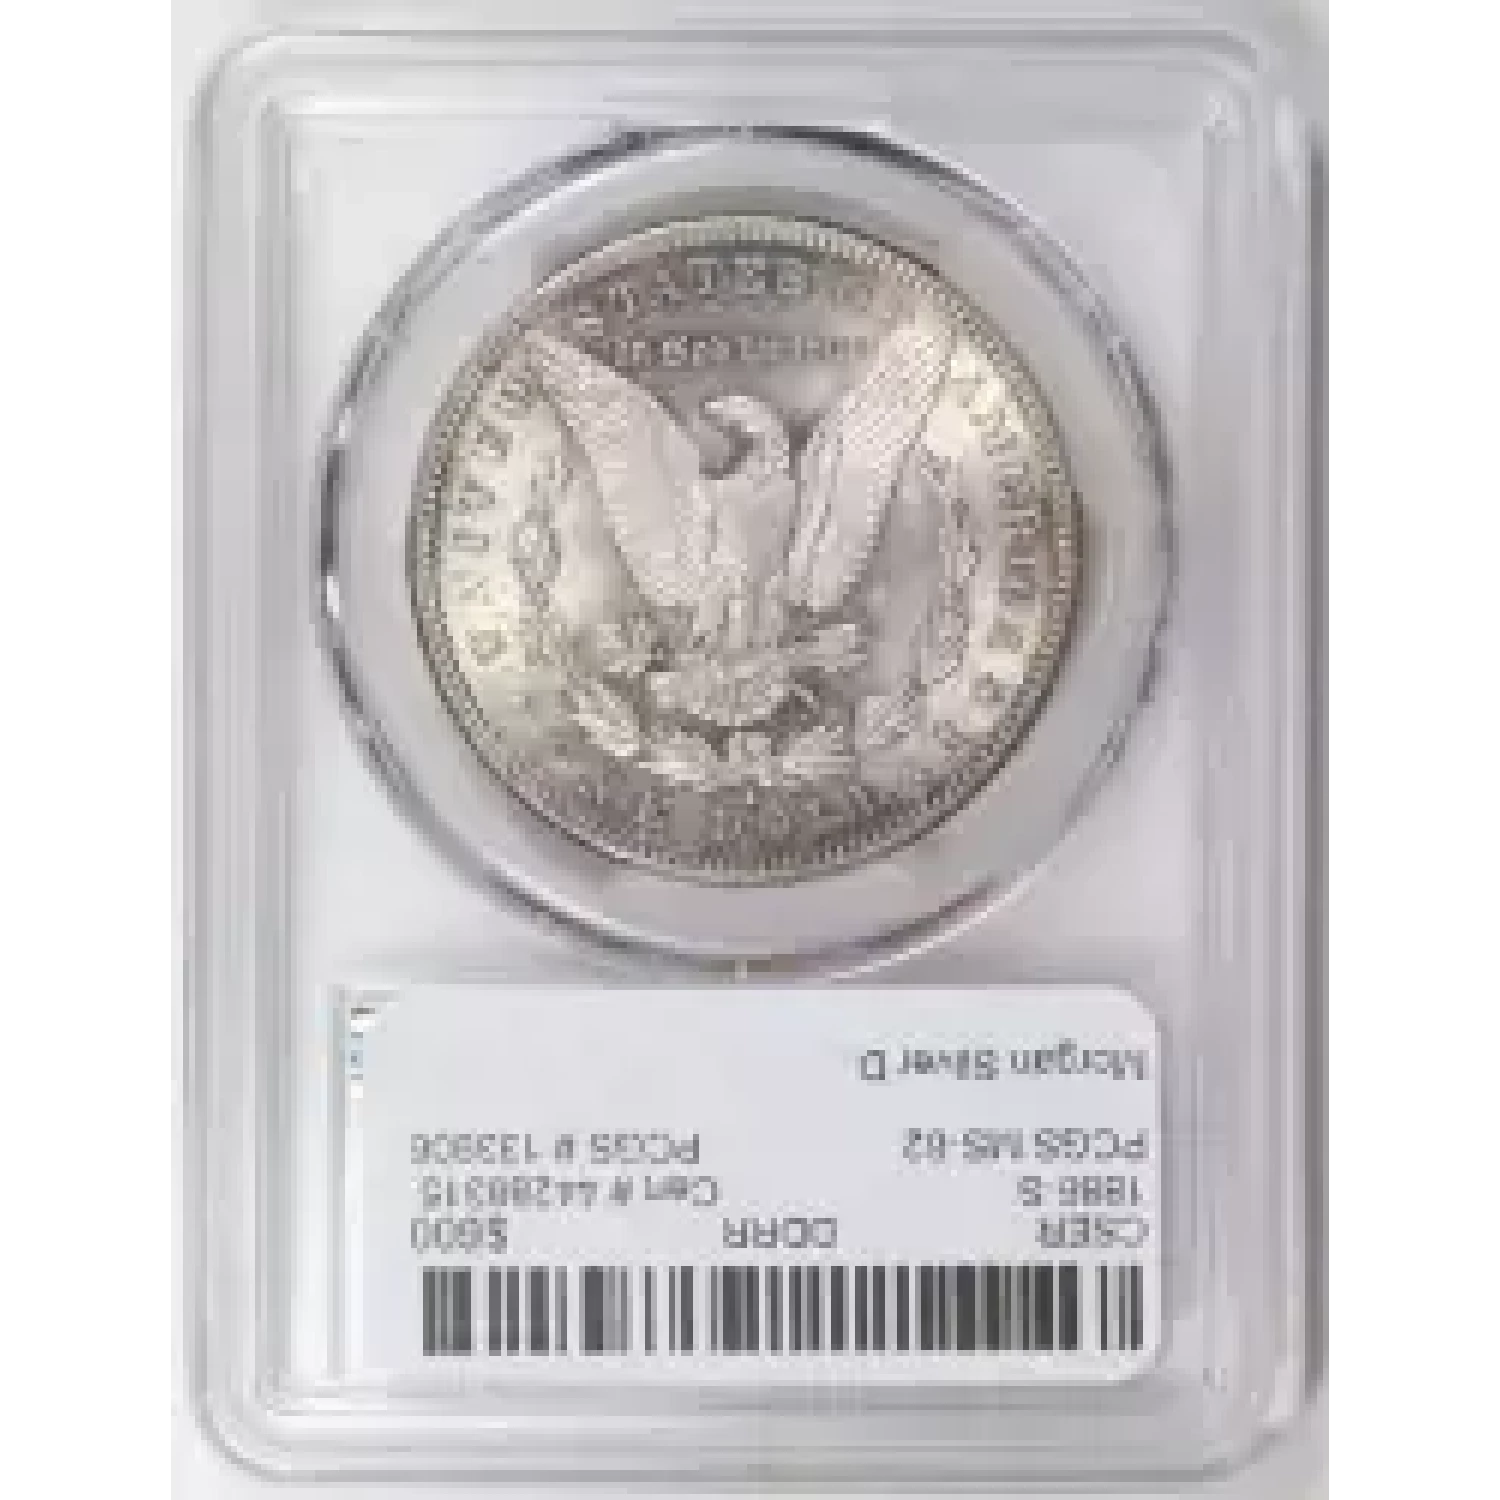 1886-S $1 VAM 2 S/S (3)